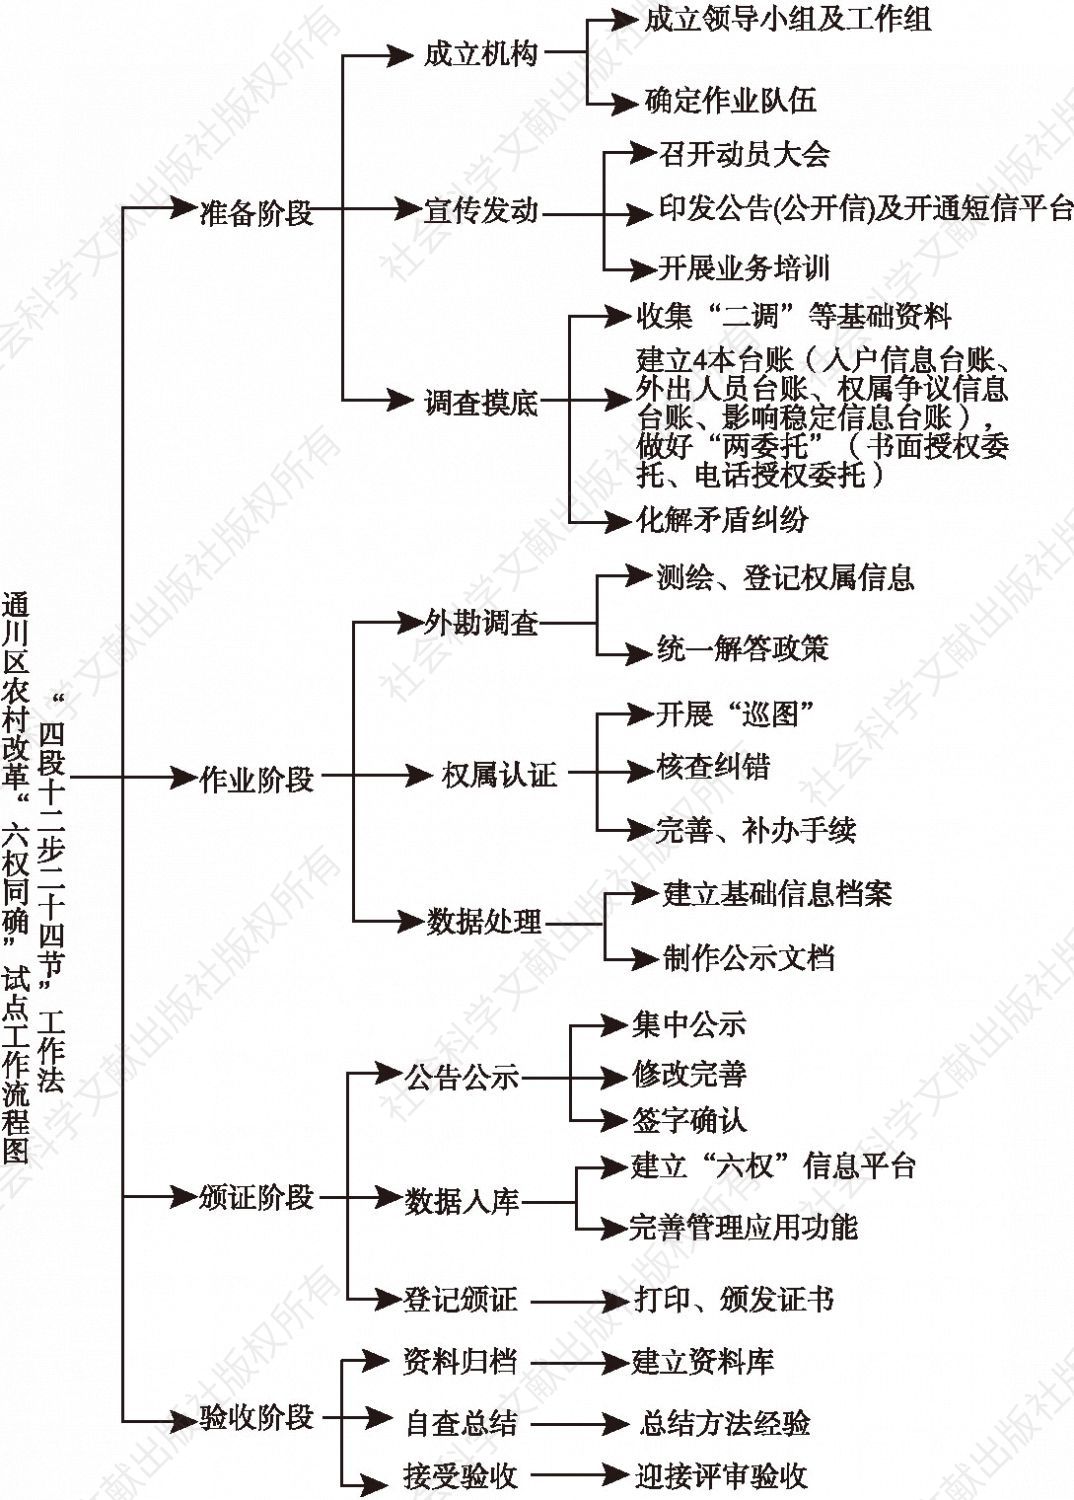 图1-2 通川区农村改革“六权同确”试点工作流程